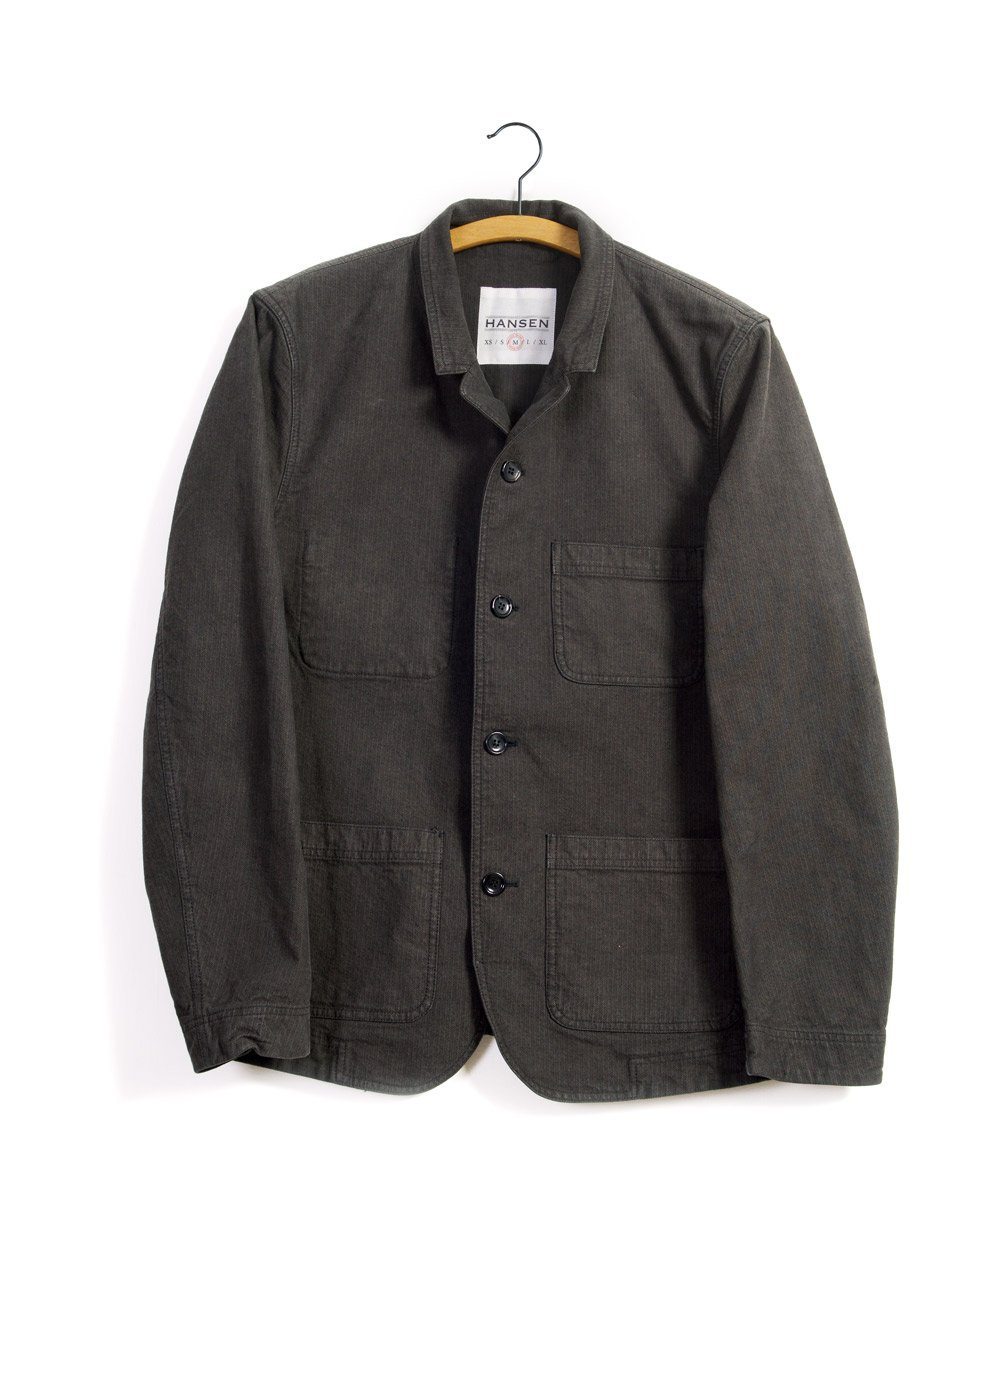 NICOLAI | Informal 4-button Blazer | Woods | €335 -HANSEN Garments- HANSEN Garments